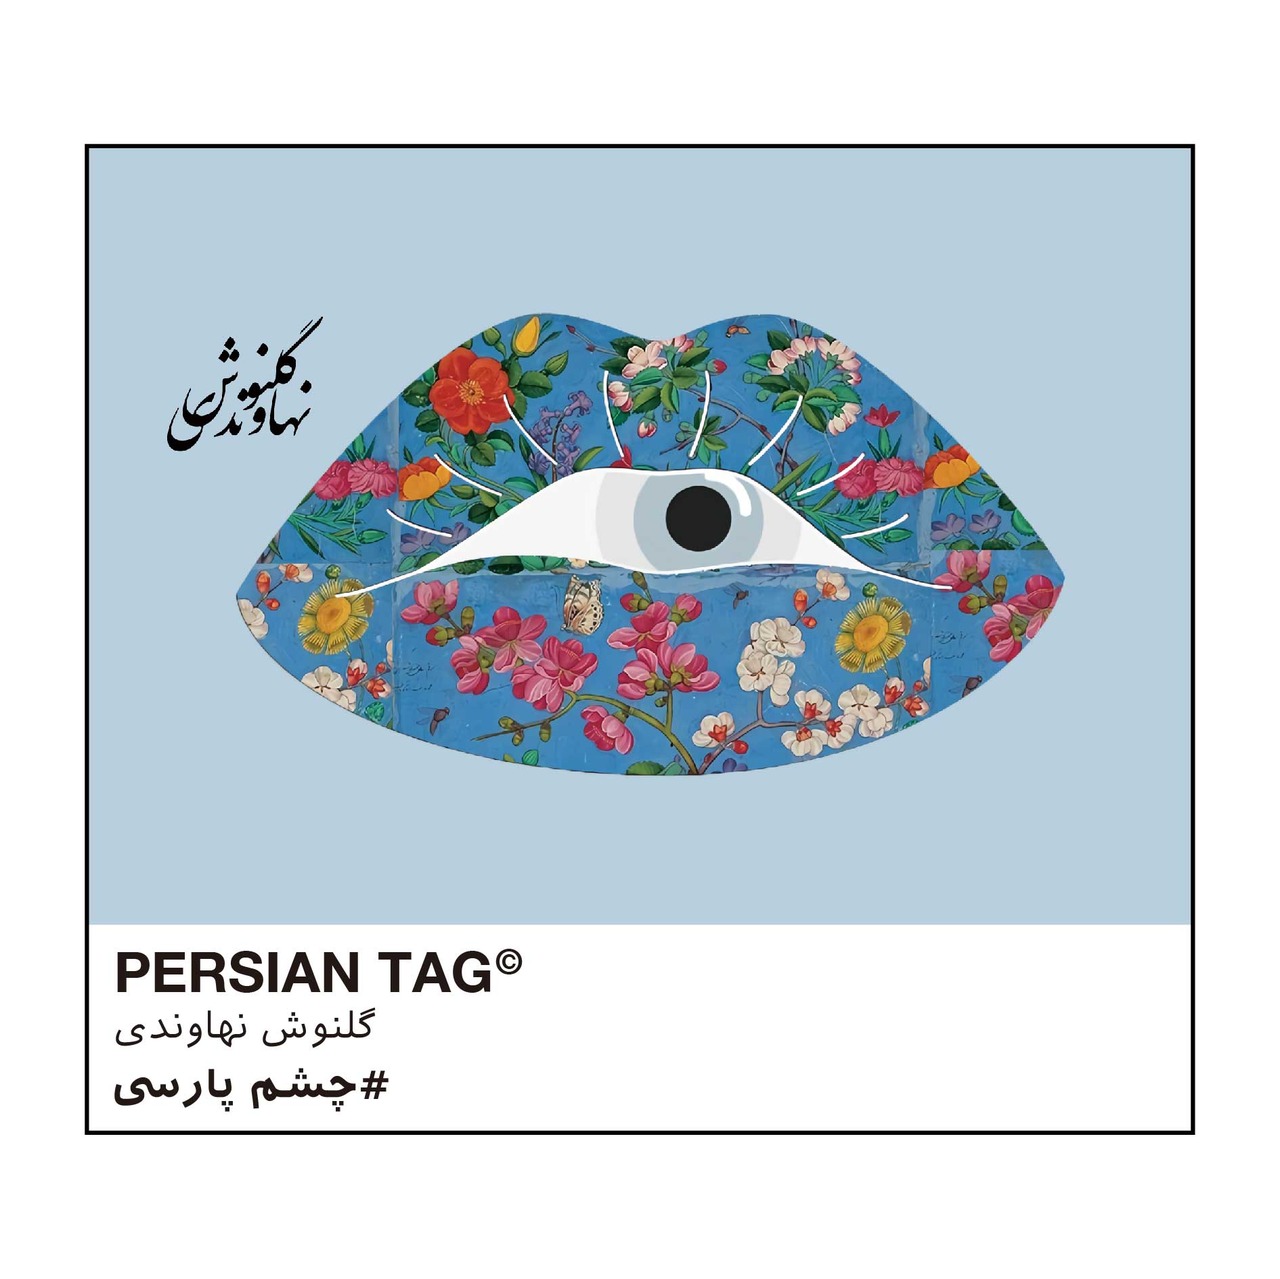 Eye of Persia by Golnoosh  / トートバッグ